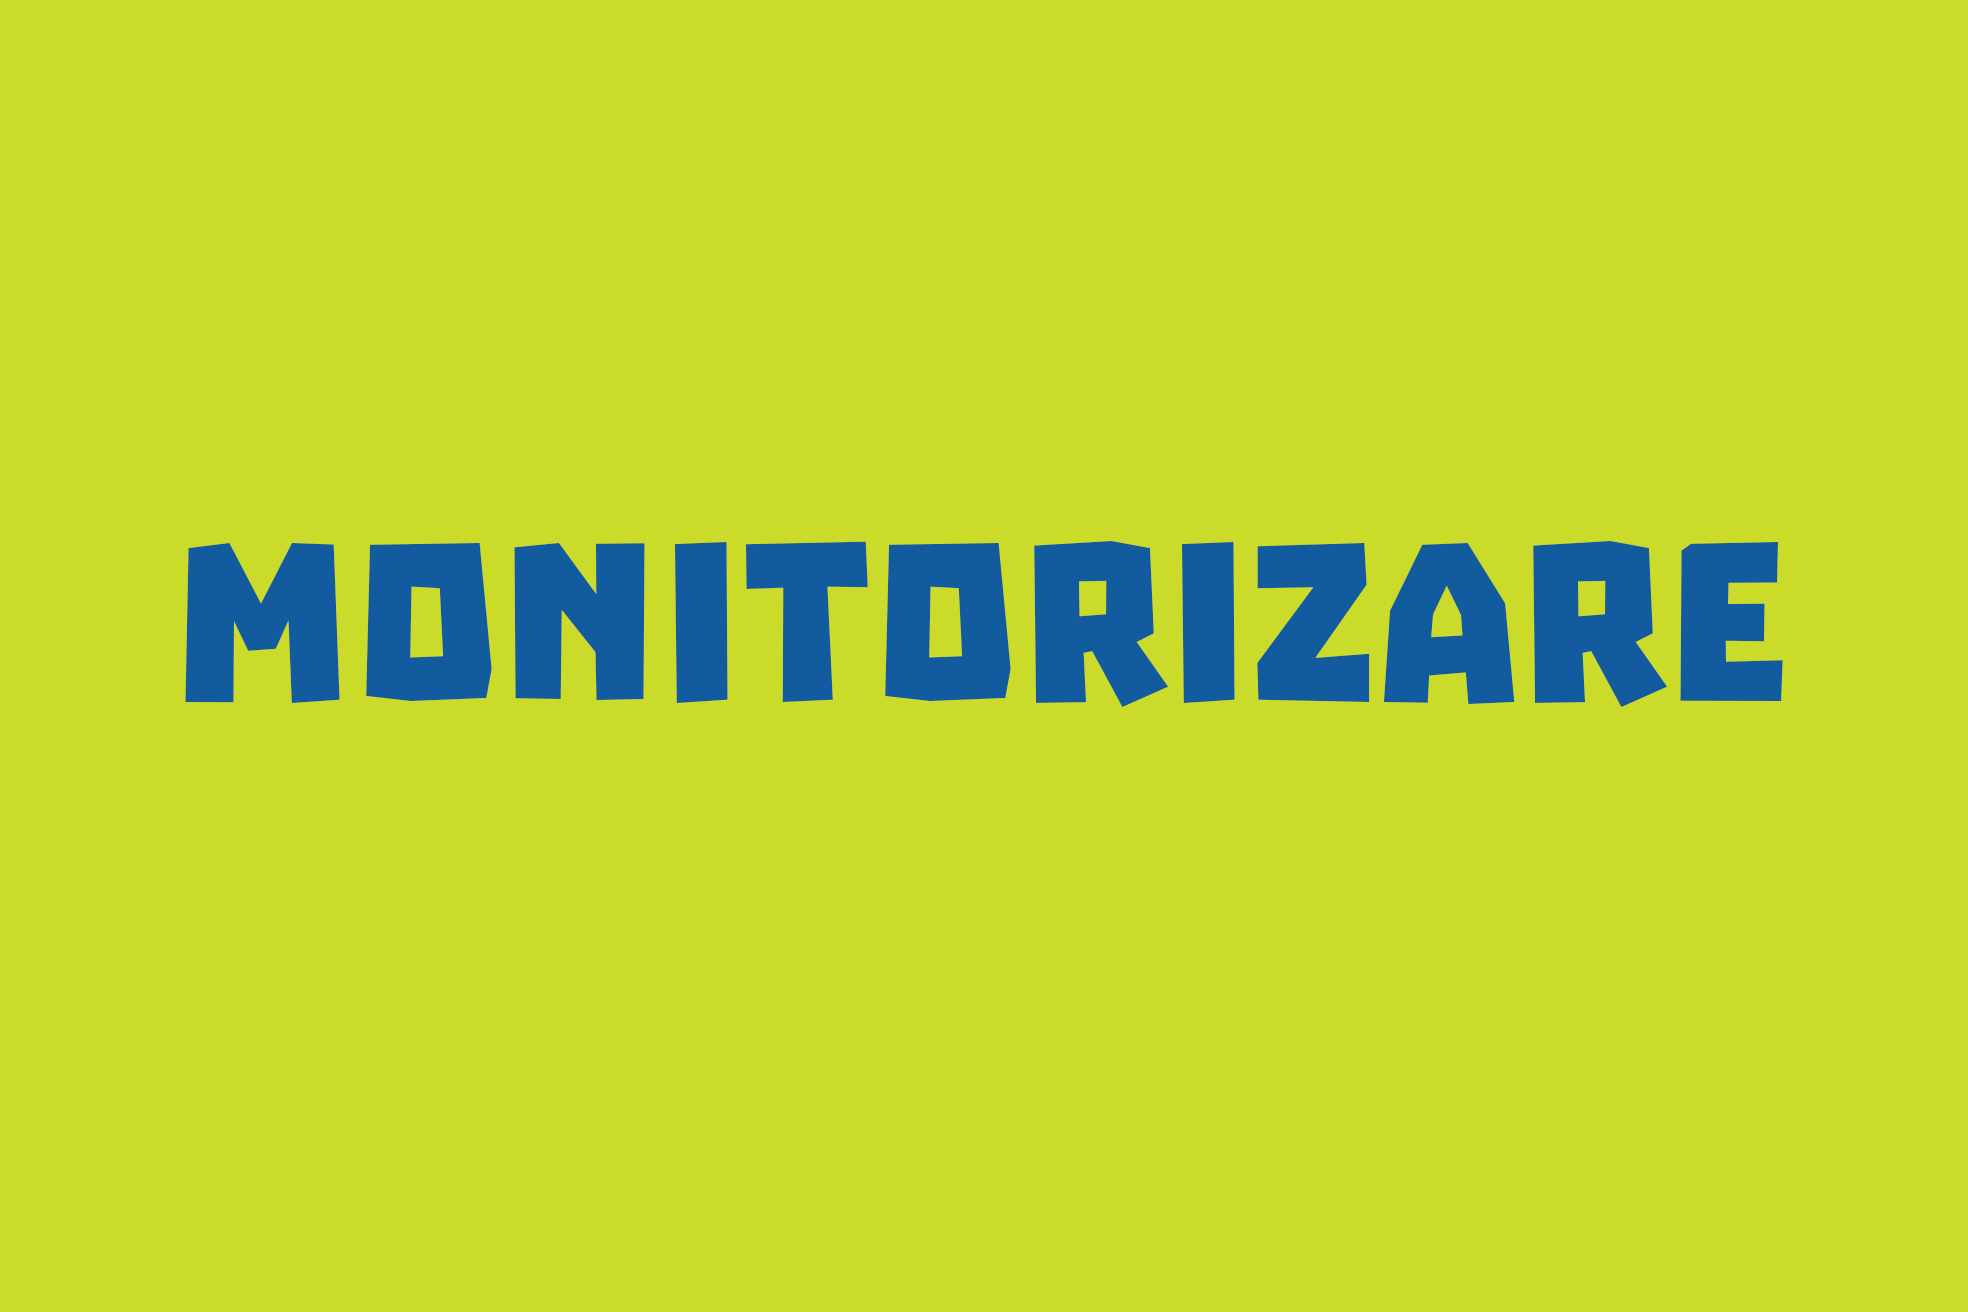 monitorizare_v2